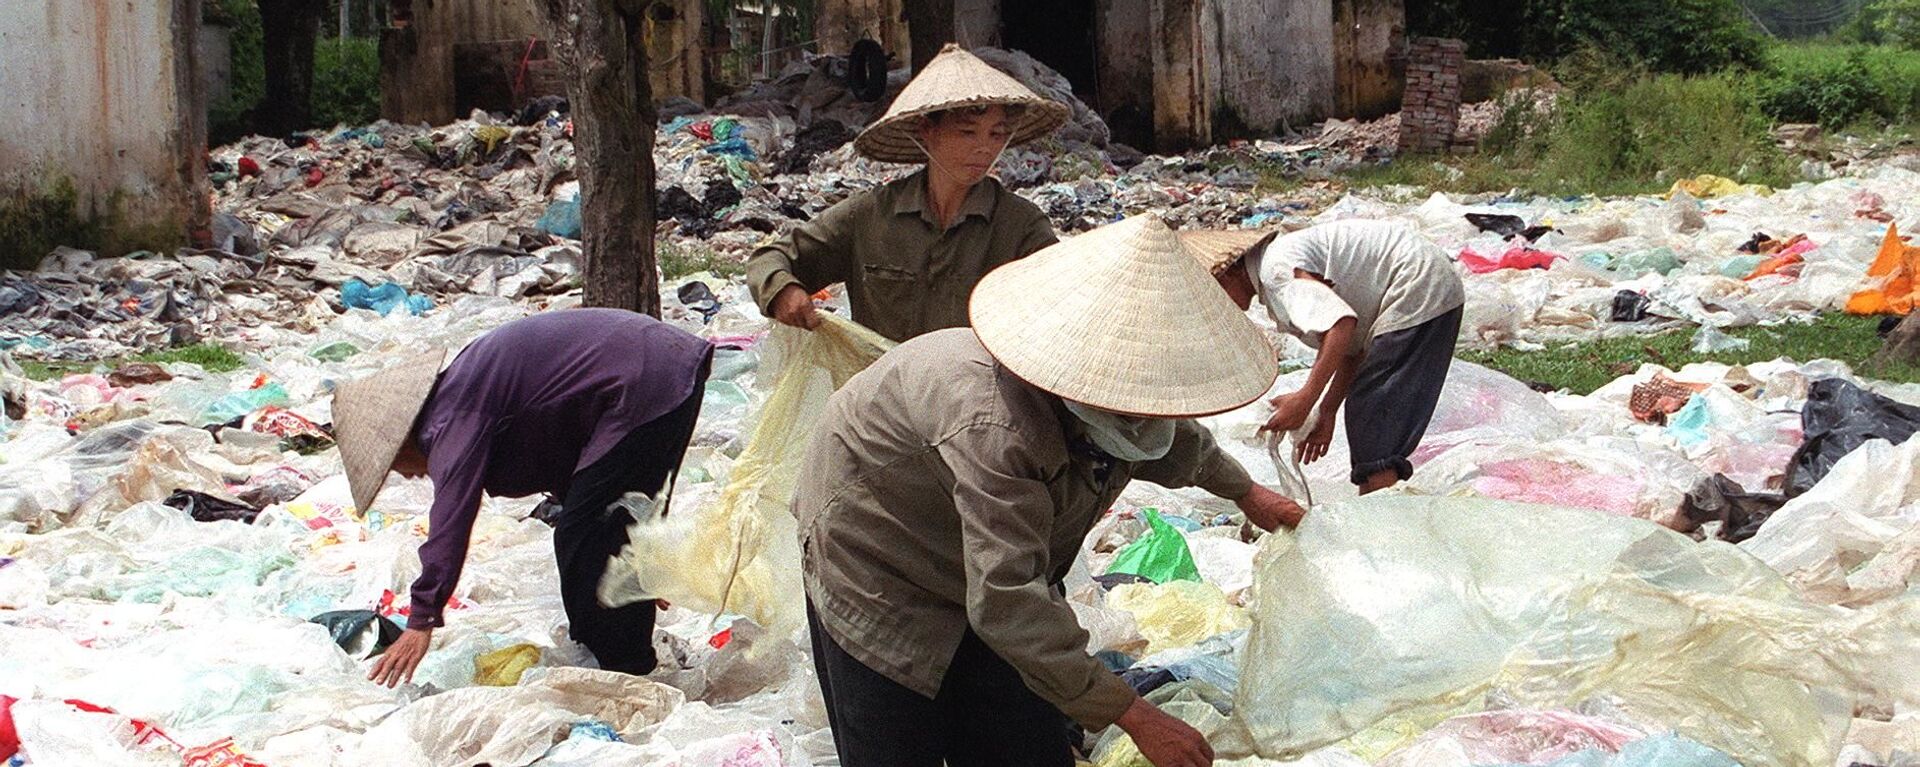 Thu thập túi nhựa trong đô thị bán cho nhà máy chế biến nhựa, Việt Nam - Sputnik Việt Nam, 1920, 07.01.2021